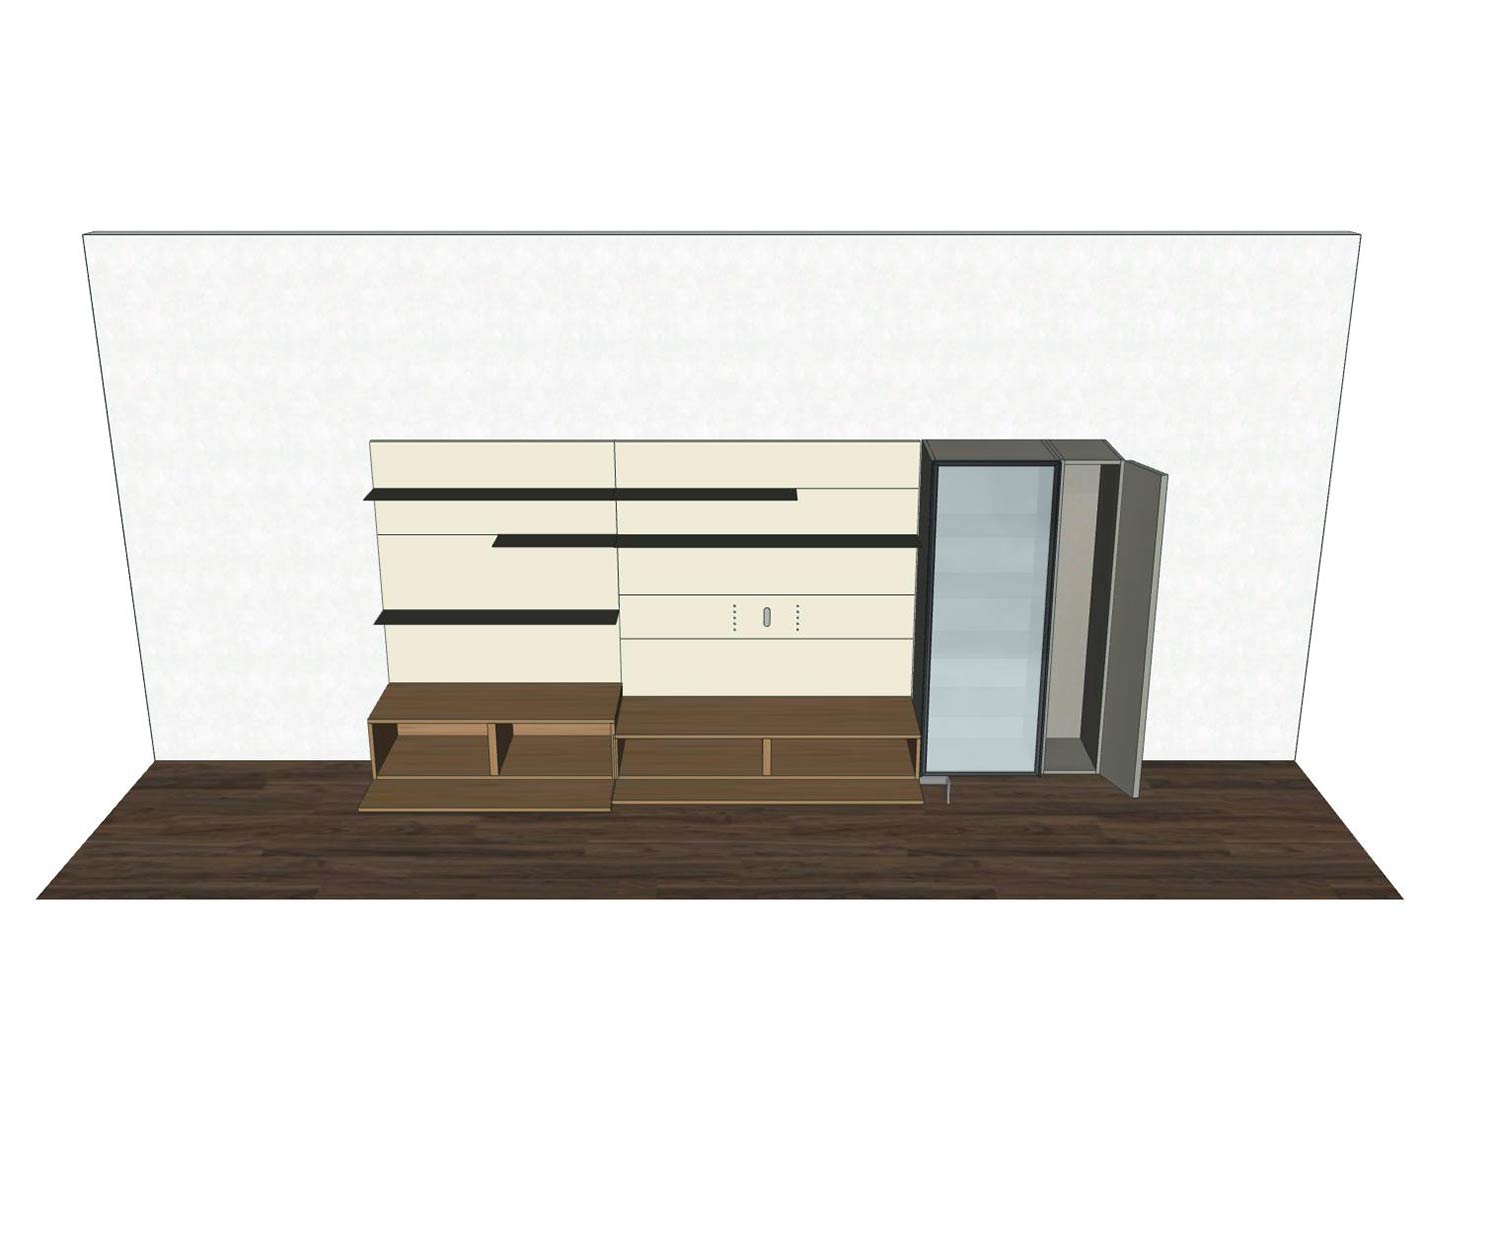 Livitalia Design Wohnwand C42 einzelne Komponenten als Skizze farbig markiert